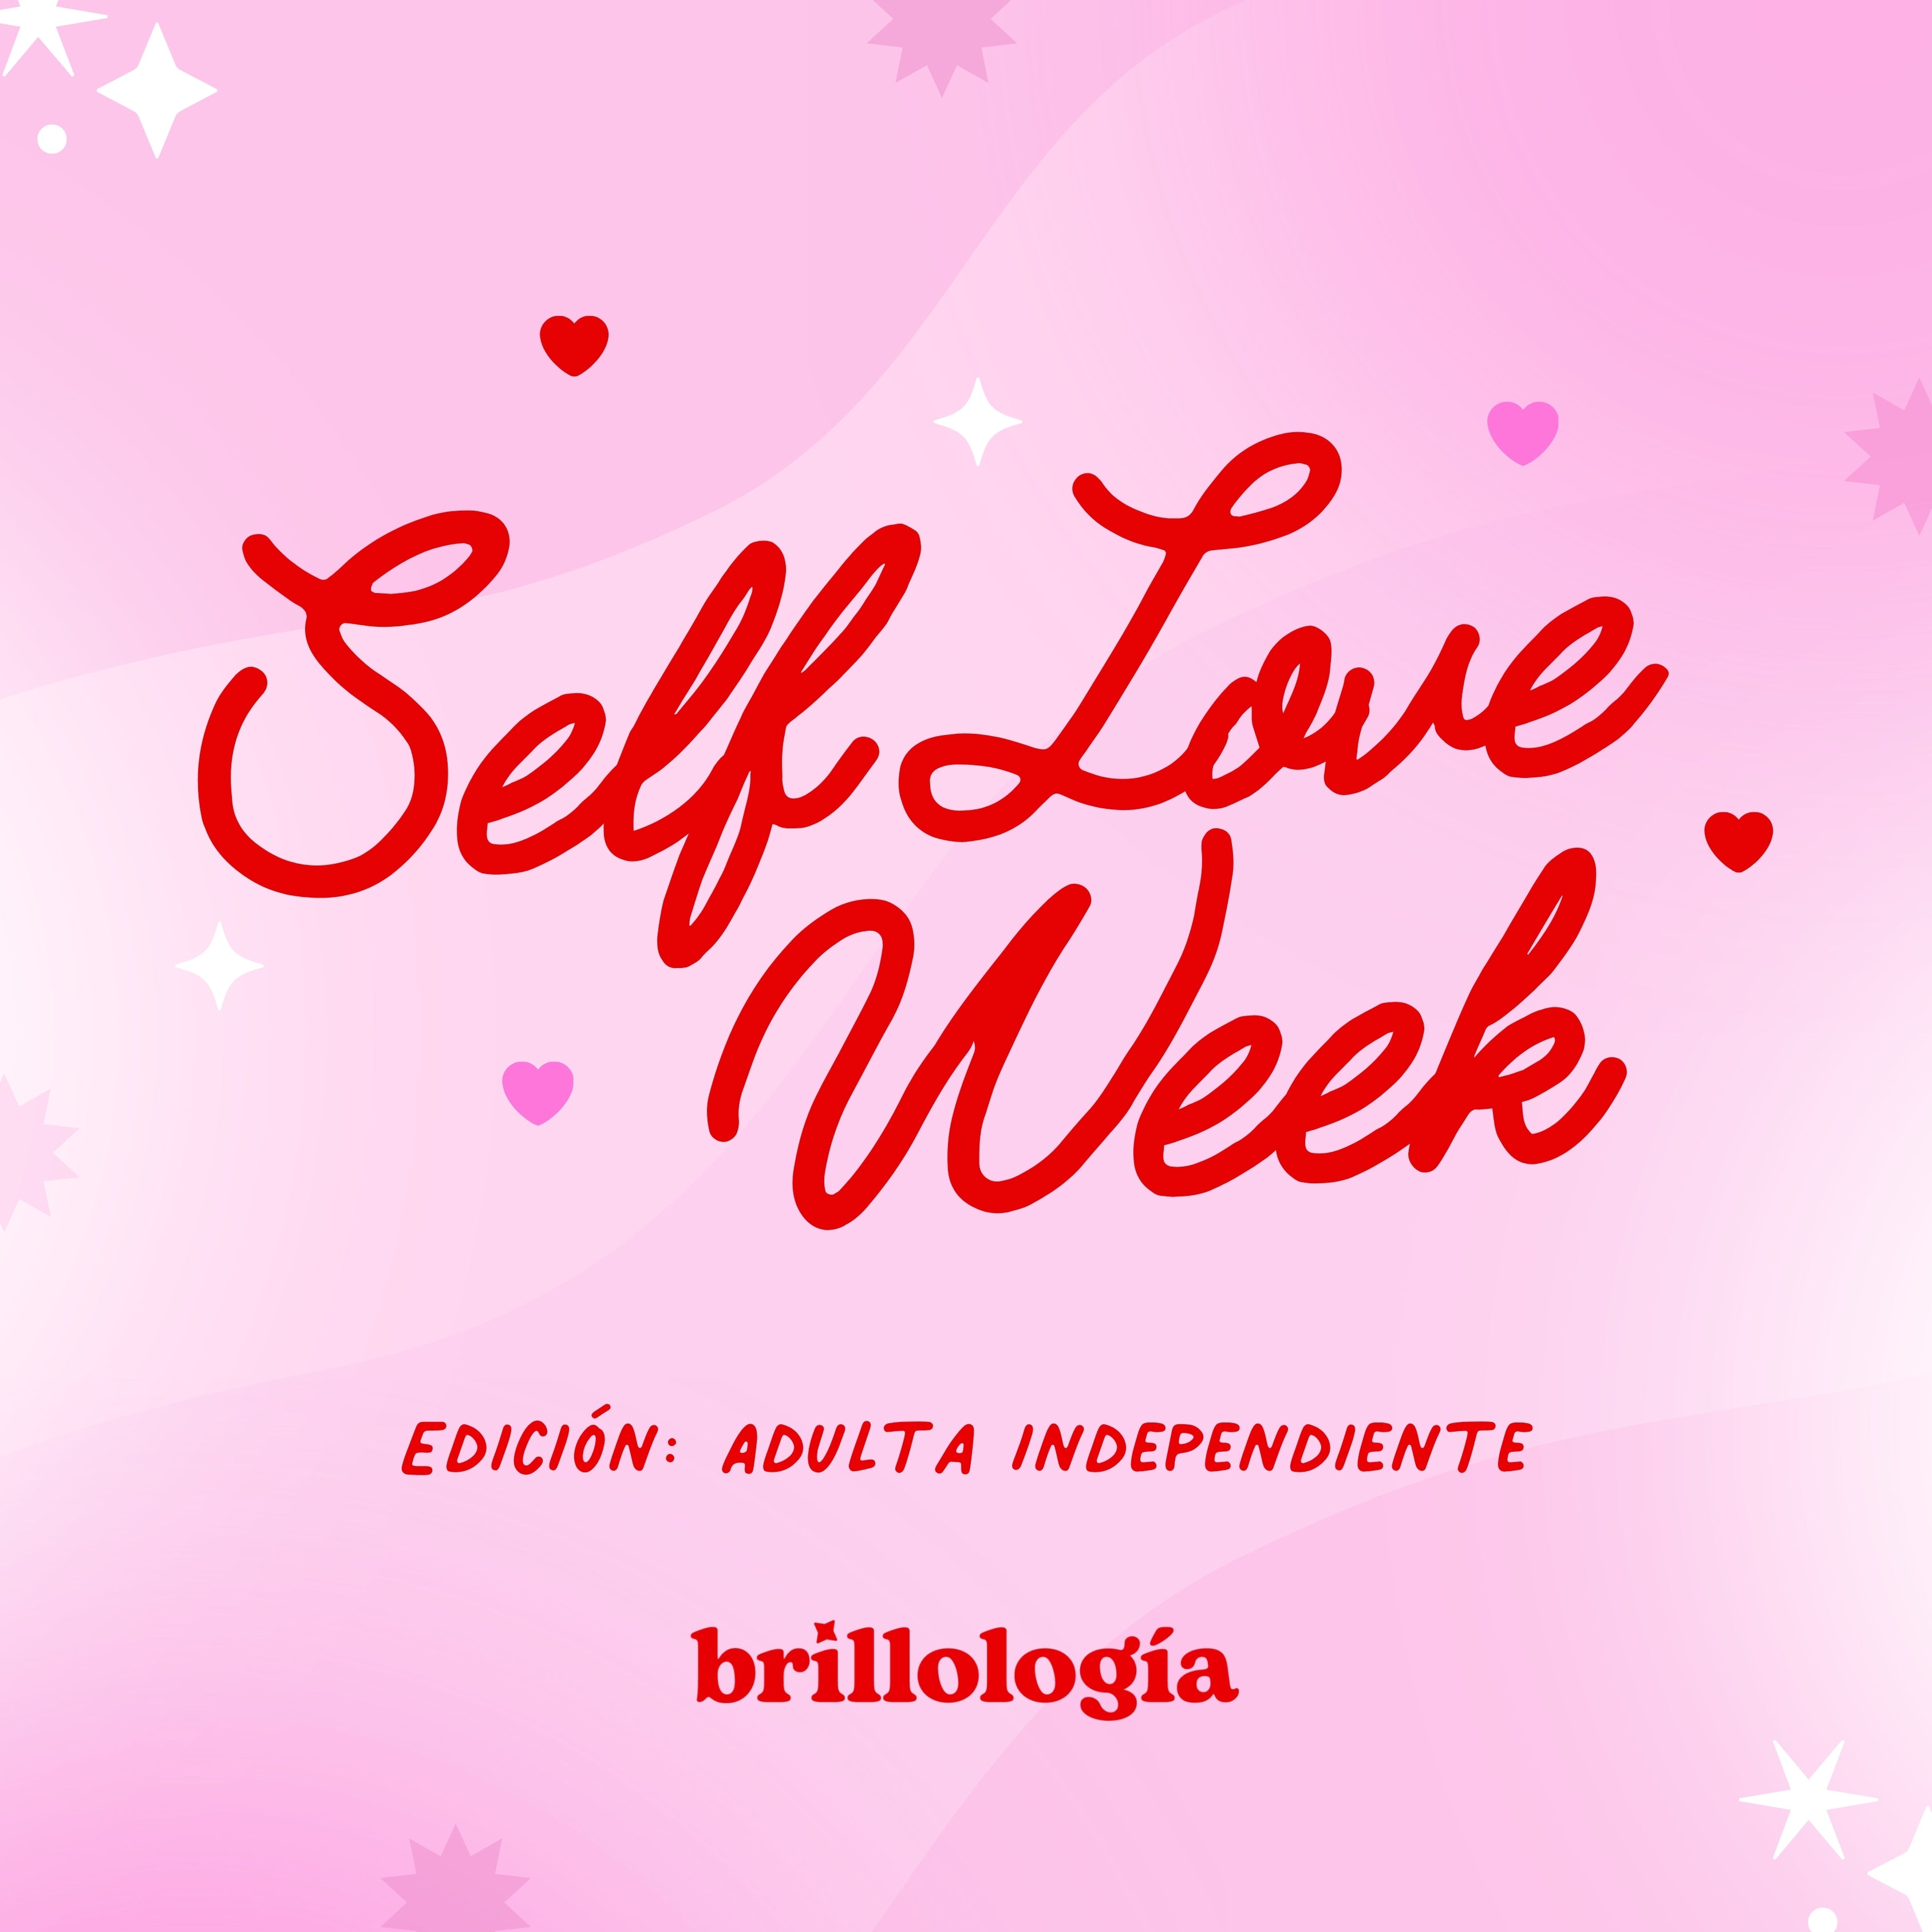 Selflove week - Adulta independiente : Compra los 8 talleres